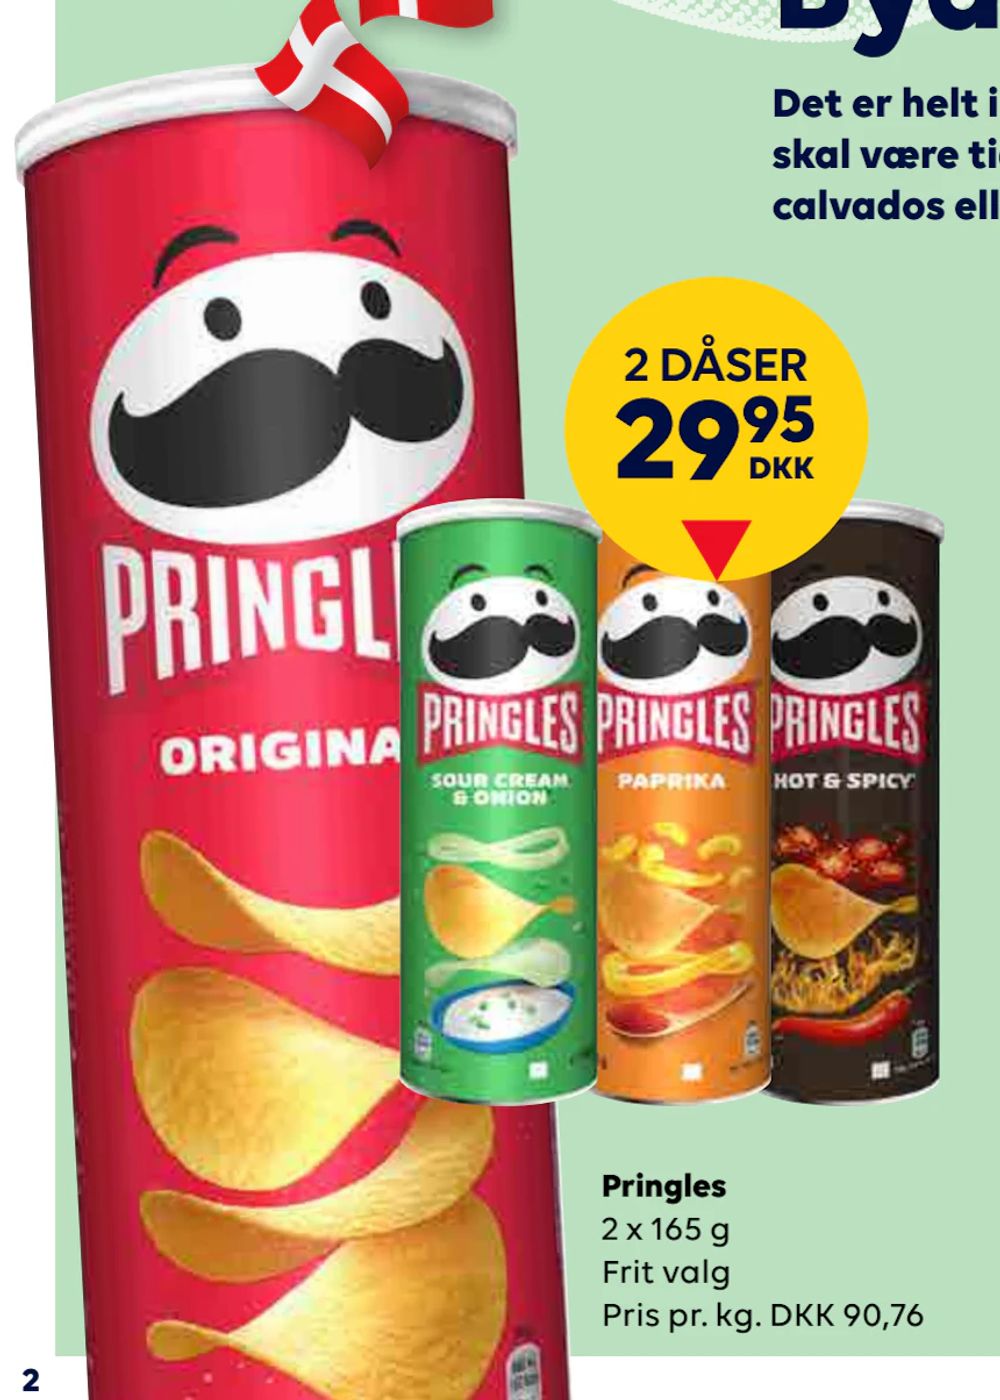 Tilbud på Pringles fra BorderShop til 29,95 kr.